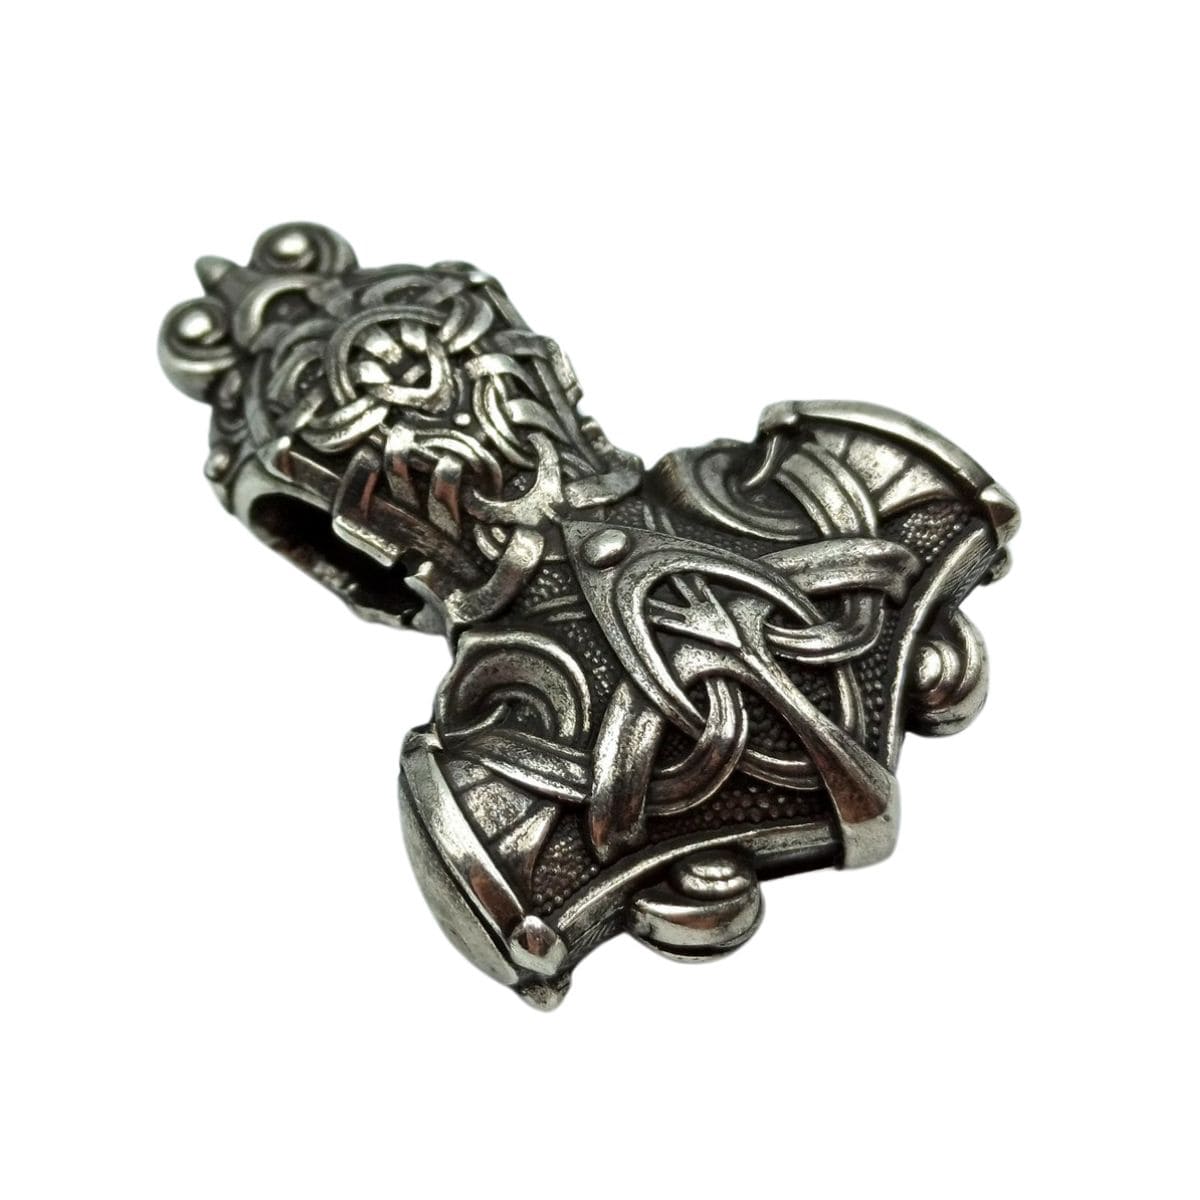 Mjolnir Hammer silver pendant